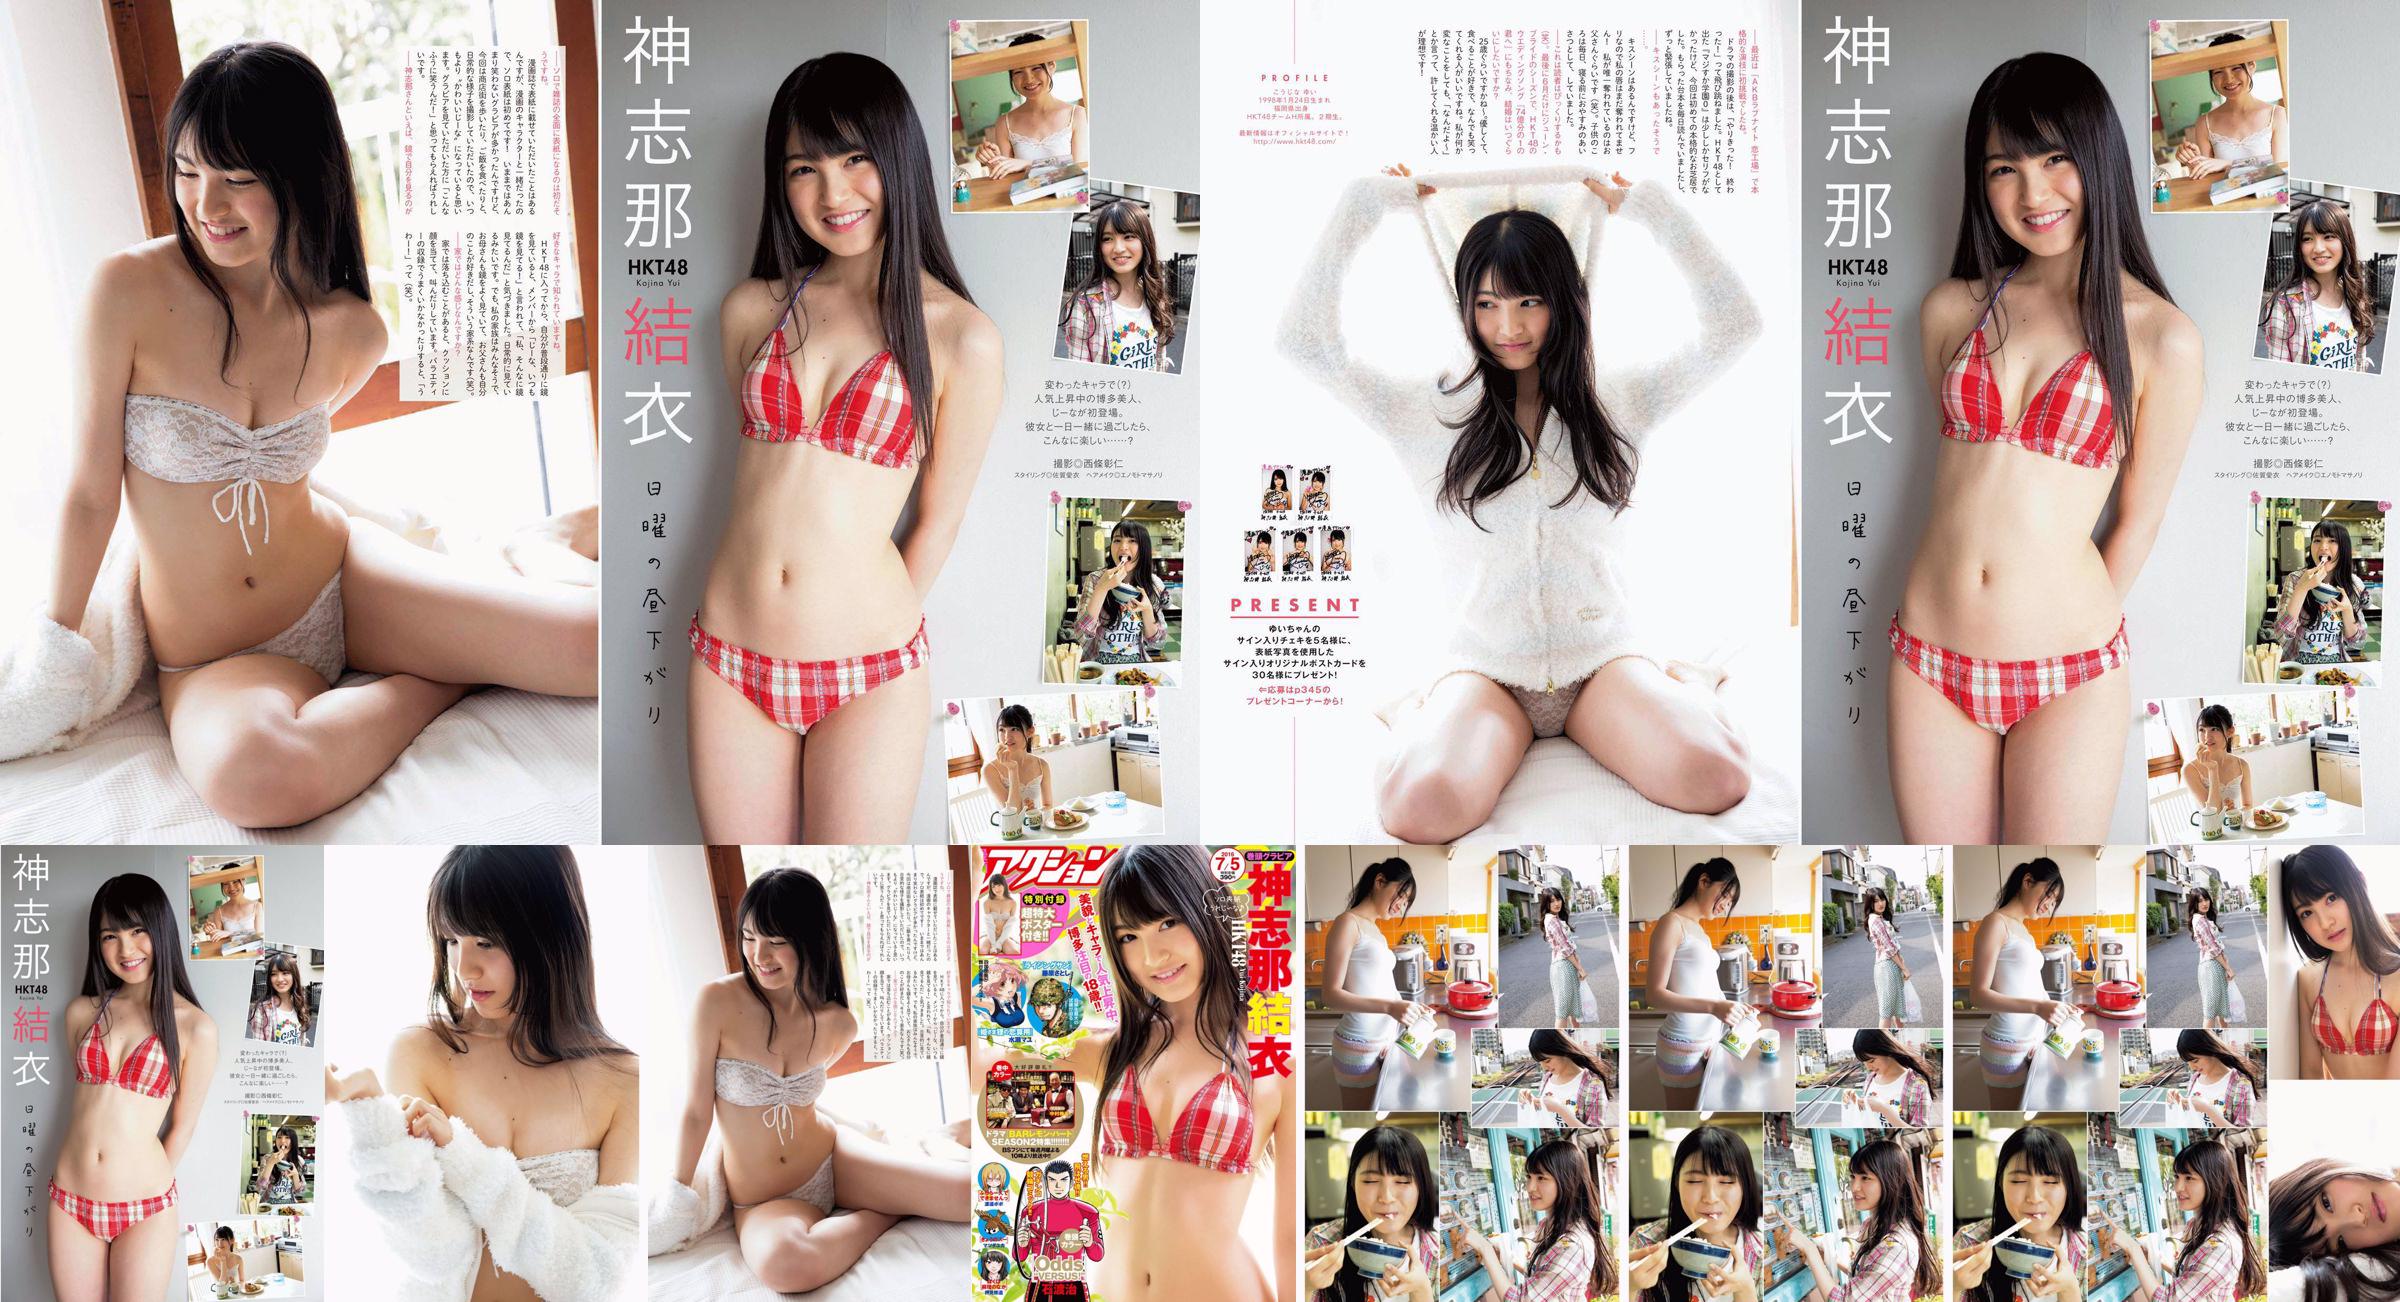 [Manga Action] Shinshina Yui 2016 No.13 Photo Magazine No.77a5fc Pagina 2